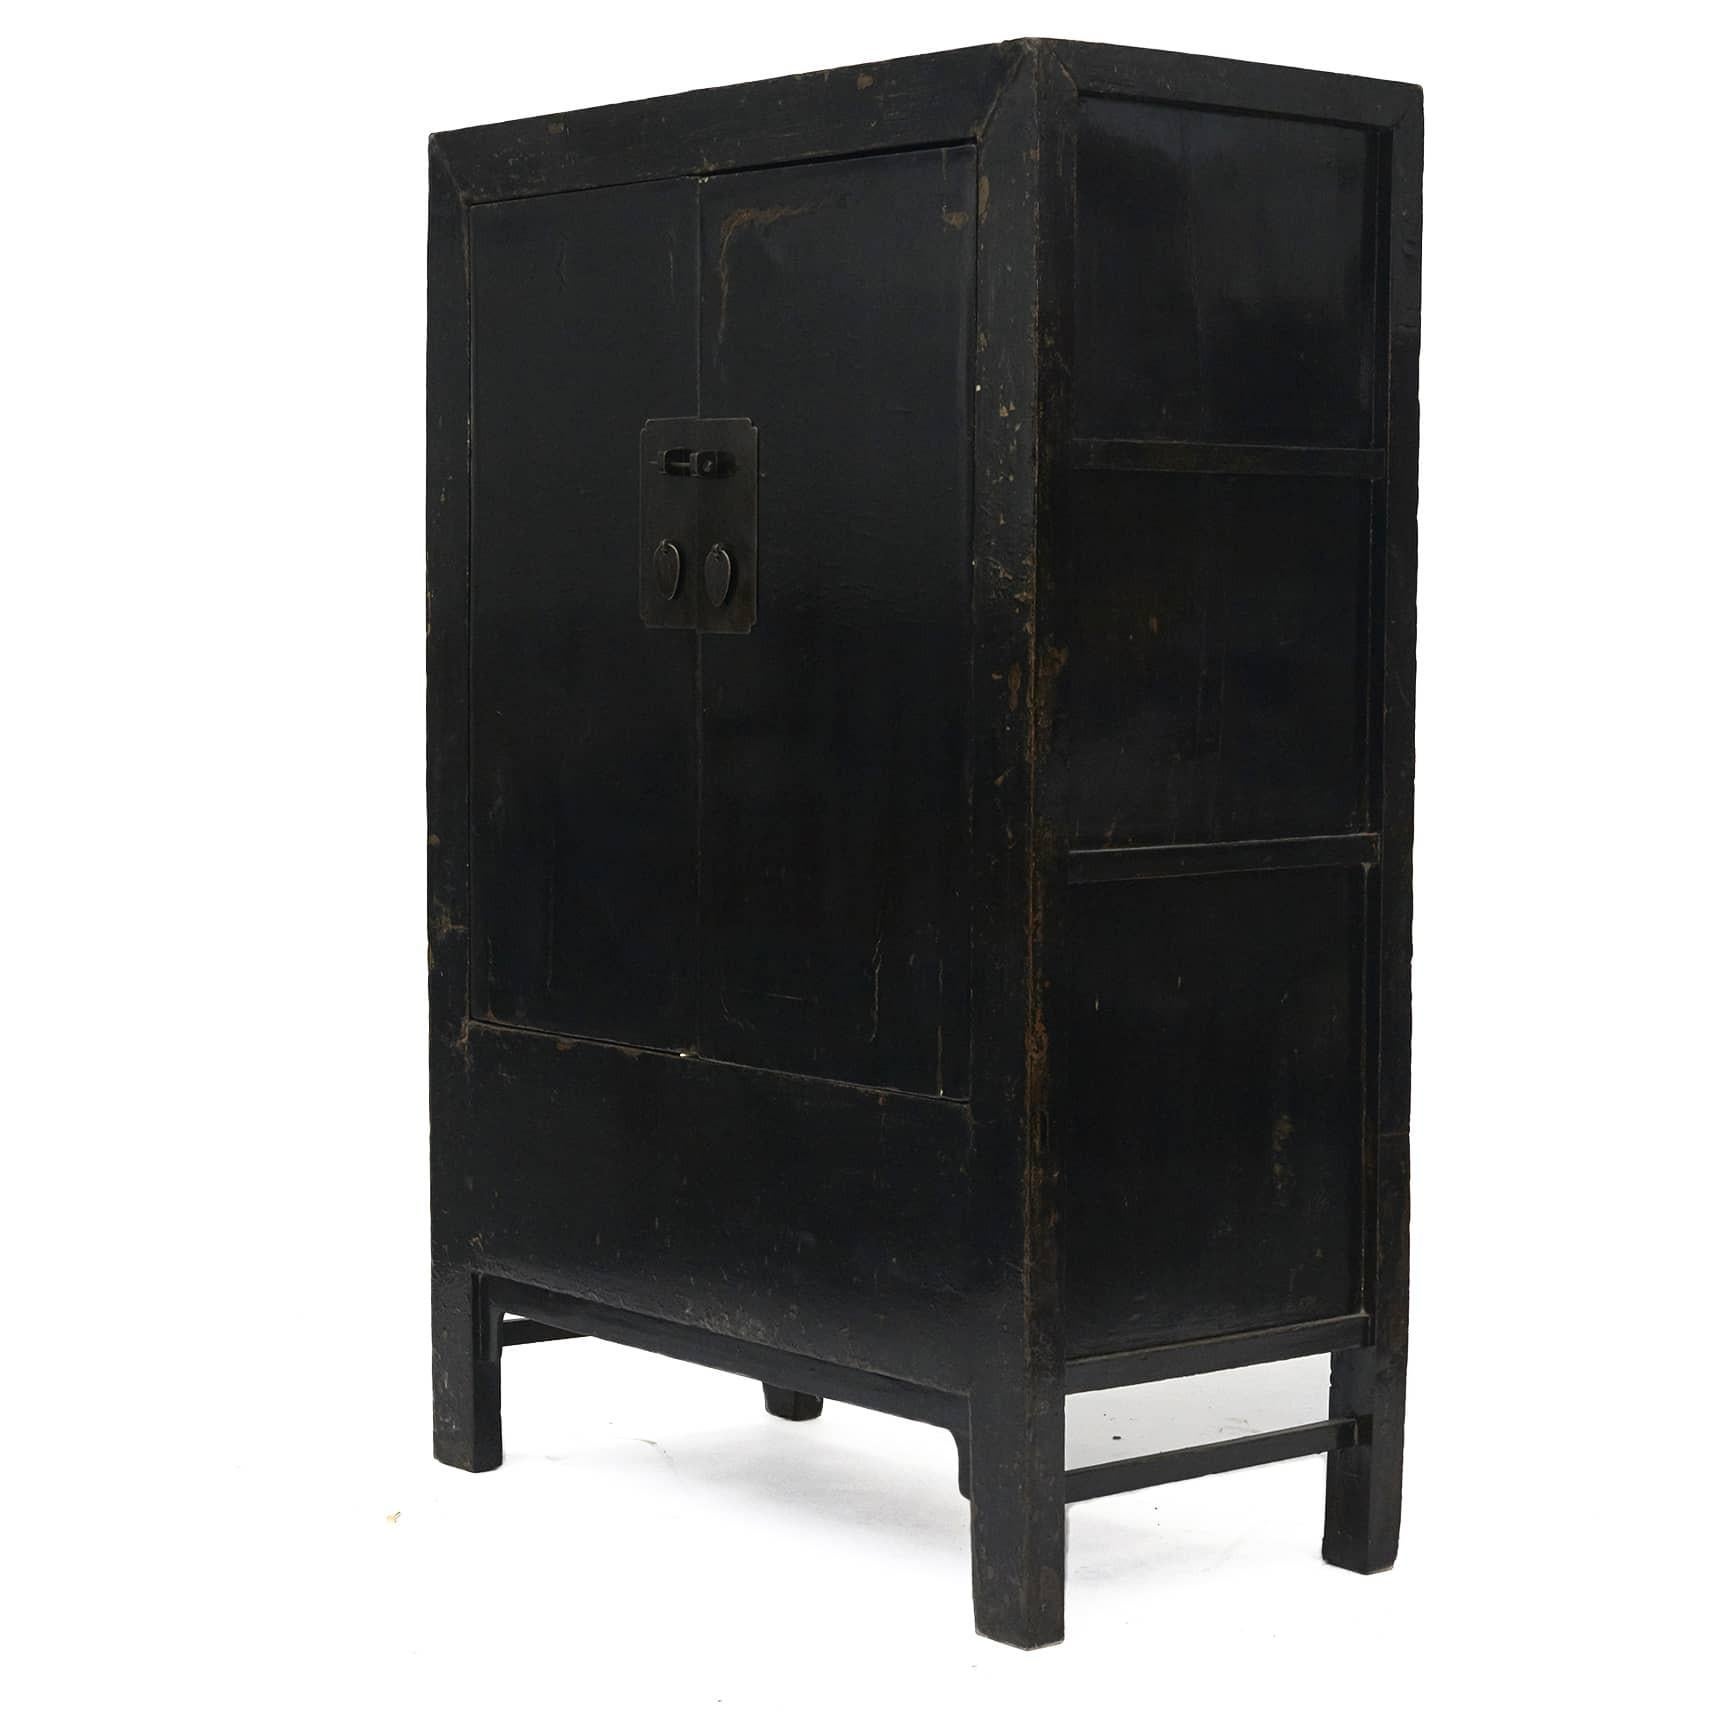 Armoire originale en laque noire avec une paire de portes.

Le recto avec une couche de 